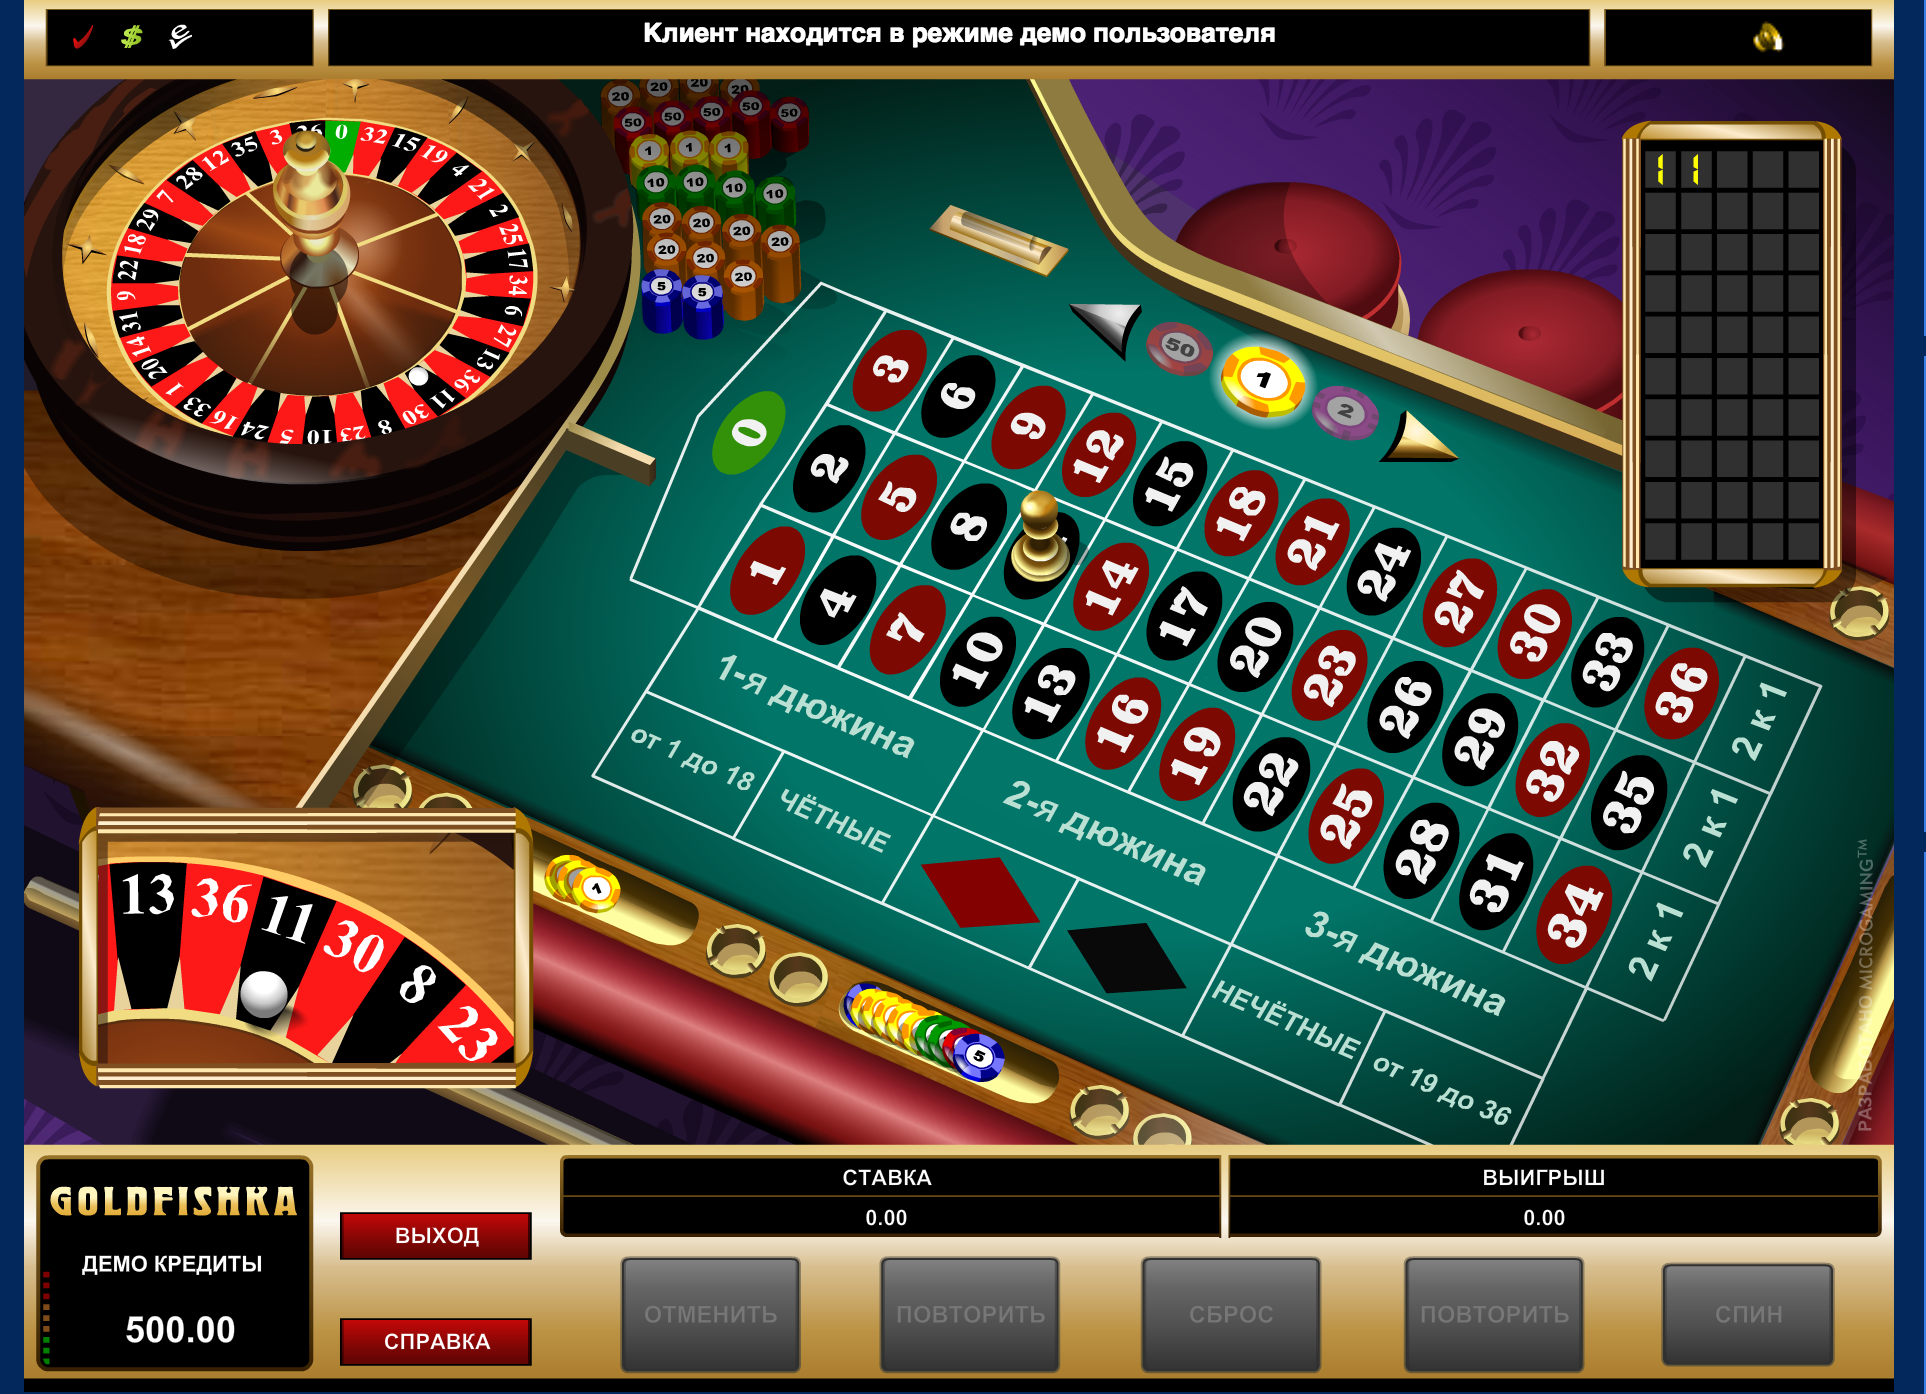 Как сделать онлайн казино бесплатно самостоятельно с нуля бесплатно онлайн wild tokyo casino отзывы